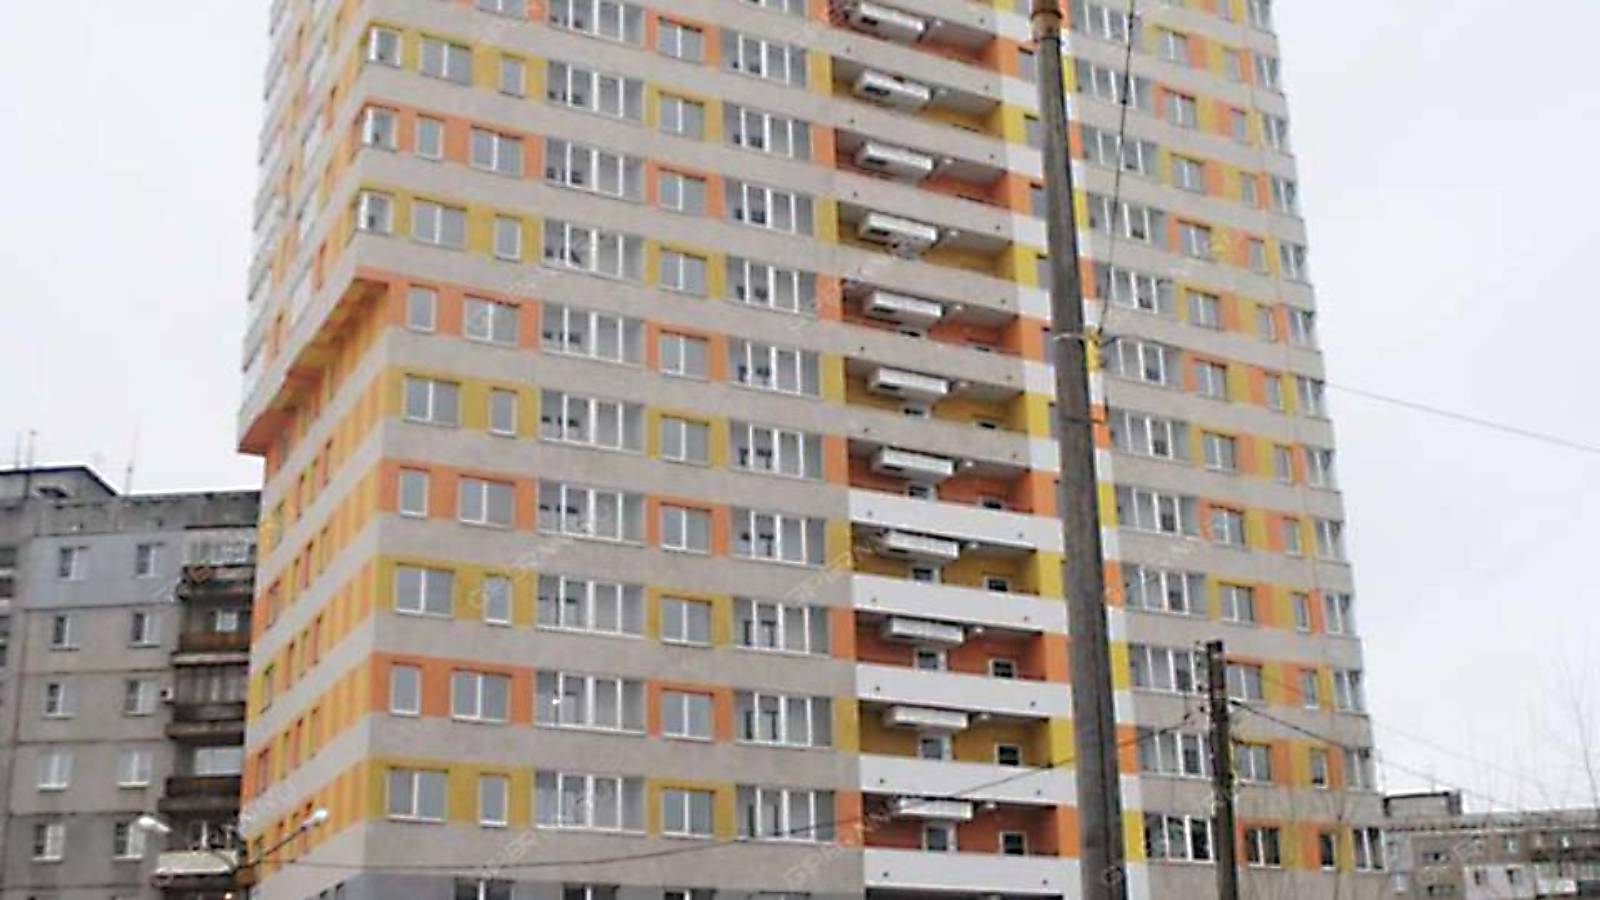 “Плоский” Дом в Нижнем Новгороде. Видео в TikTok Стало Вирусным